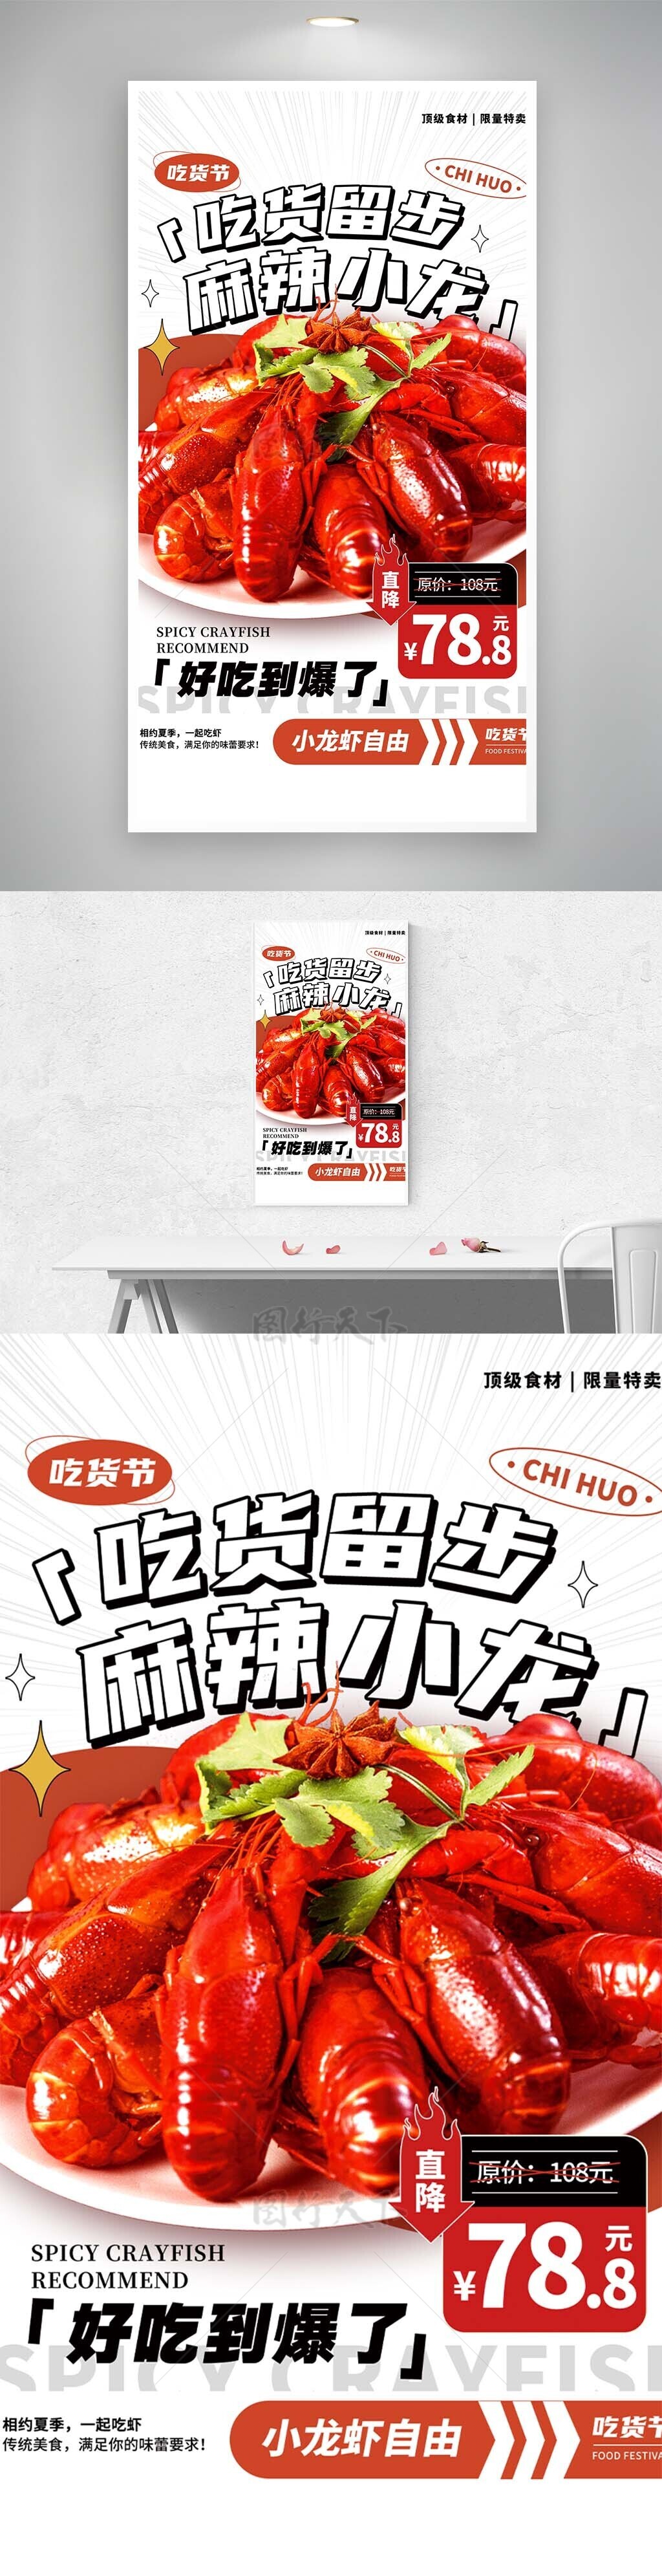 吃货留步麻辣小龙虾创意宣传海报